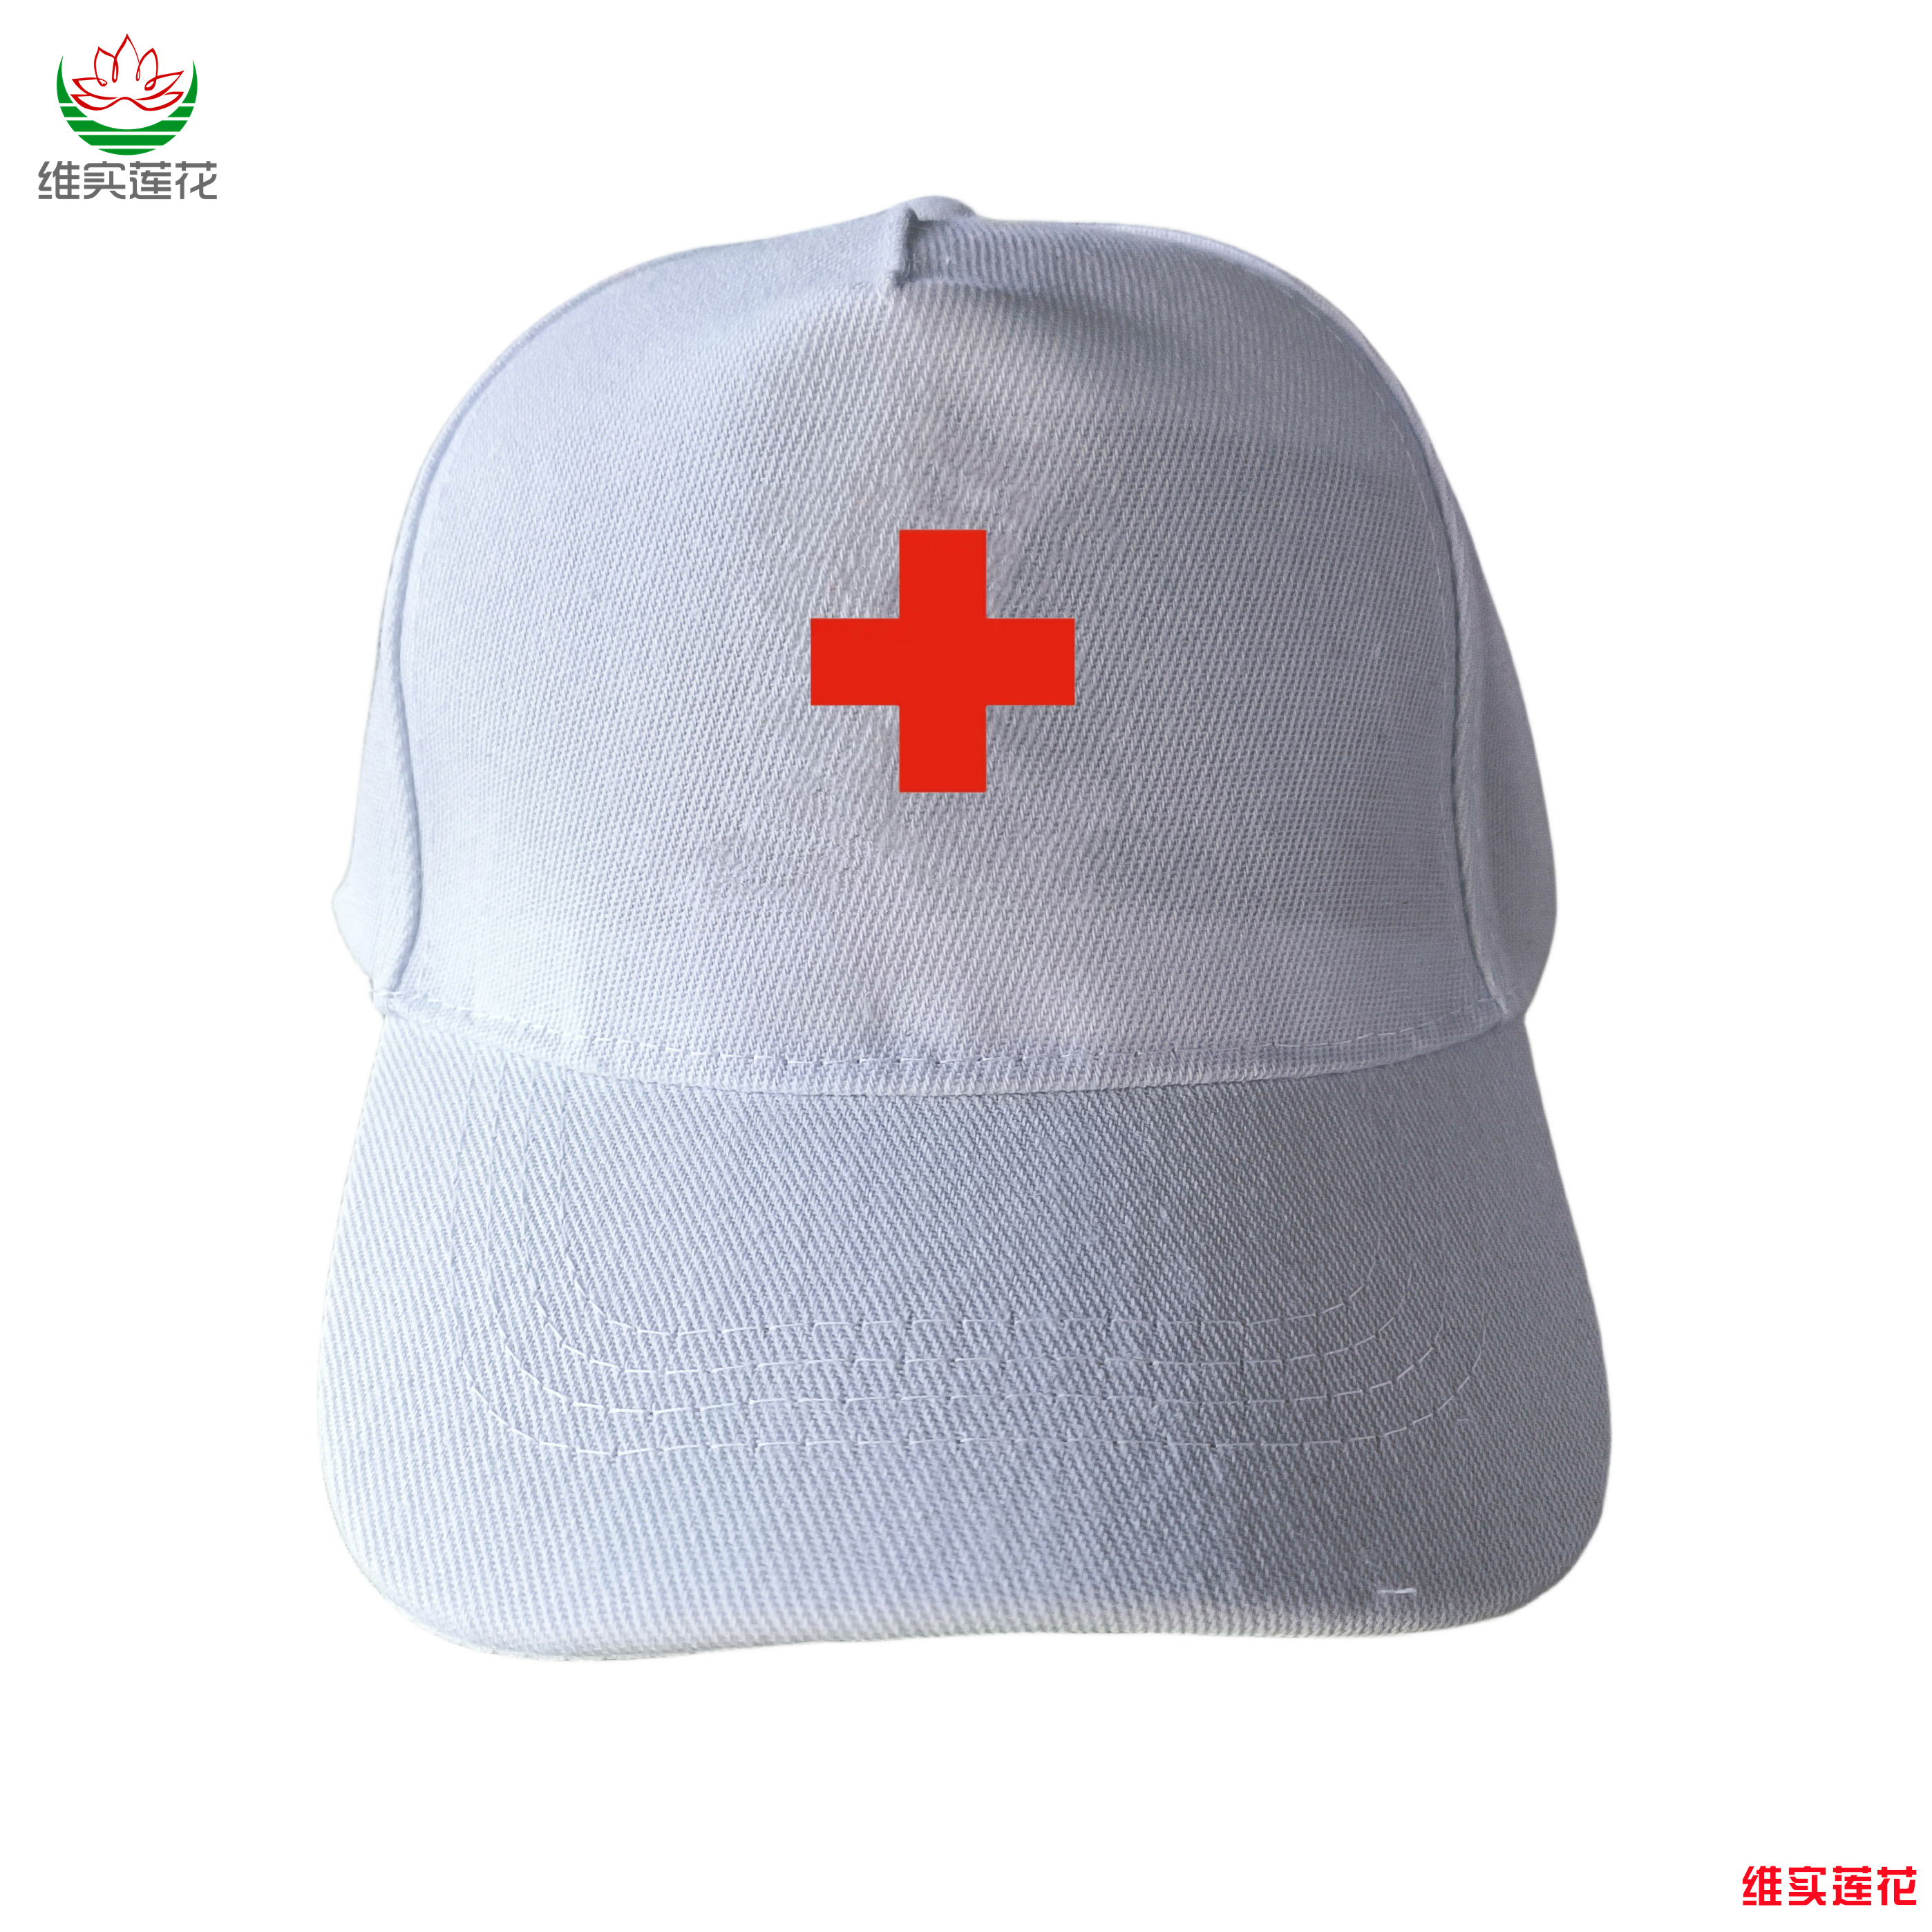 中国红十字会帽子定制青年志愿者小红帽义工活动夏帽救援队装备